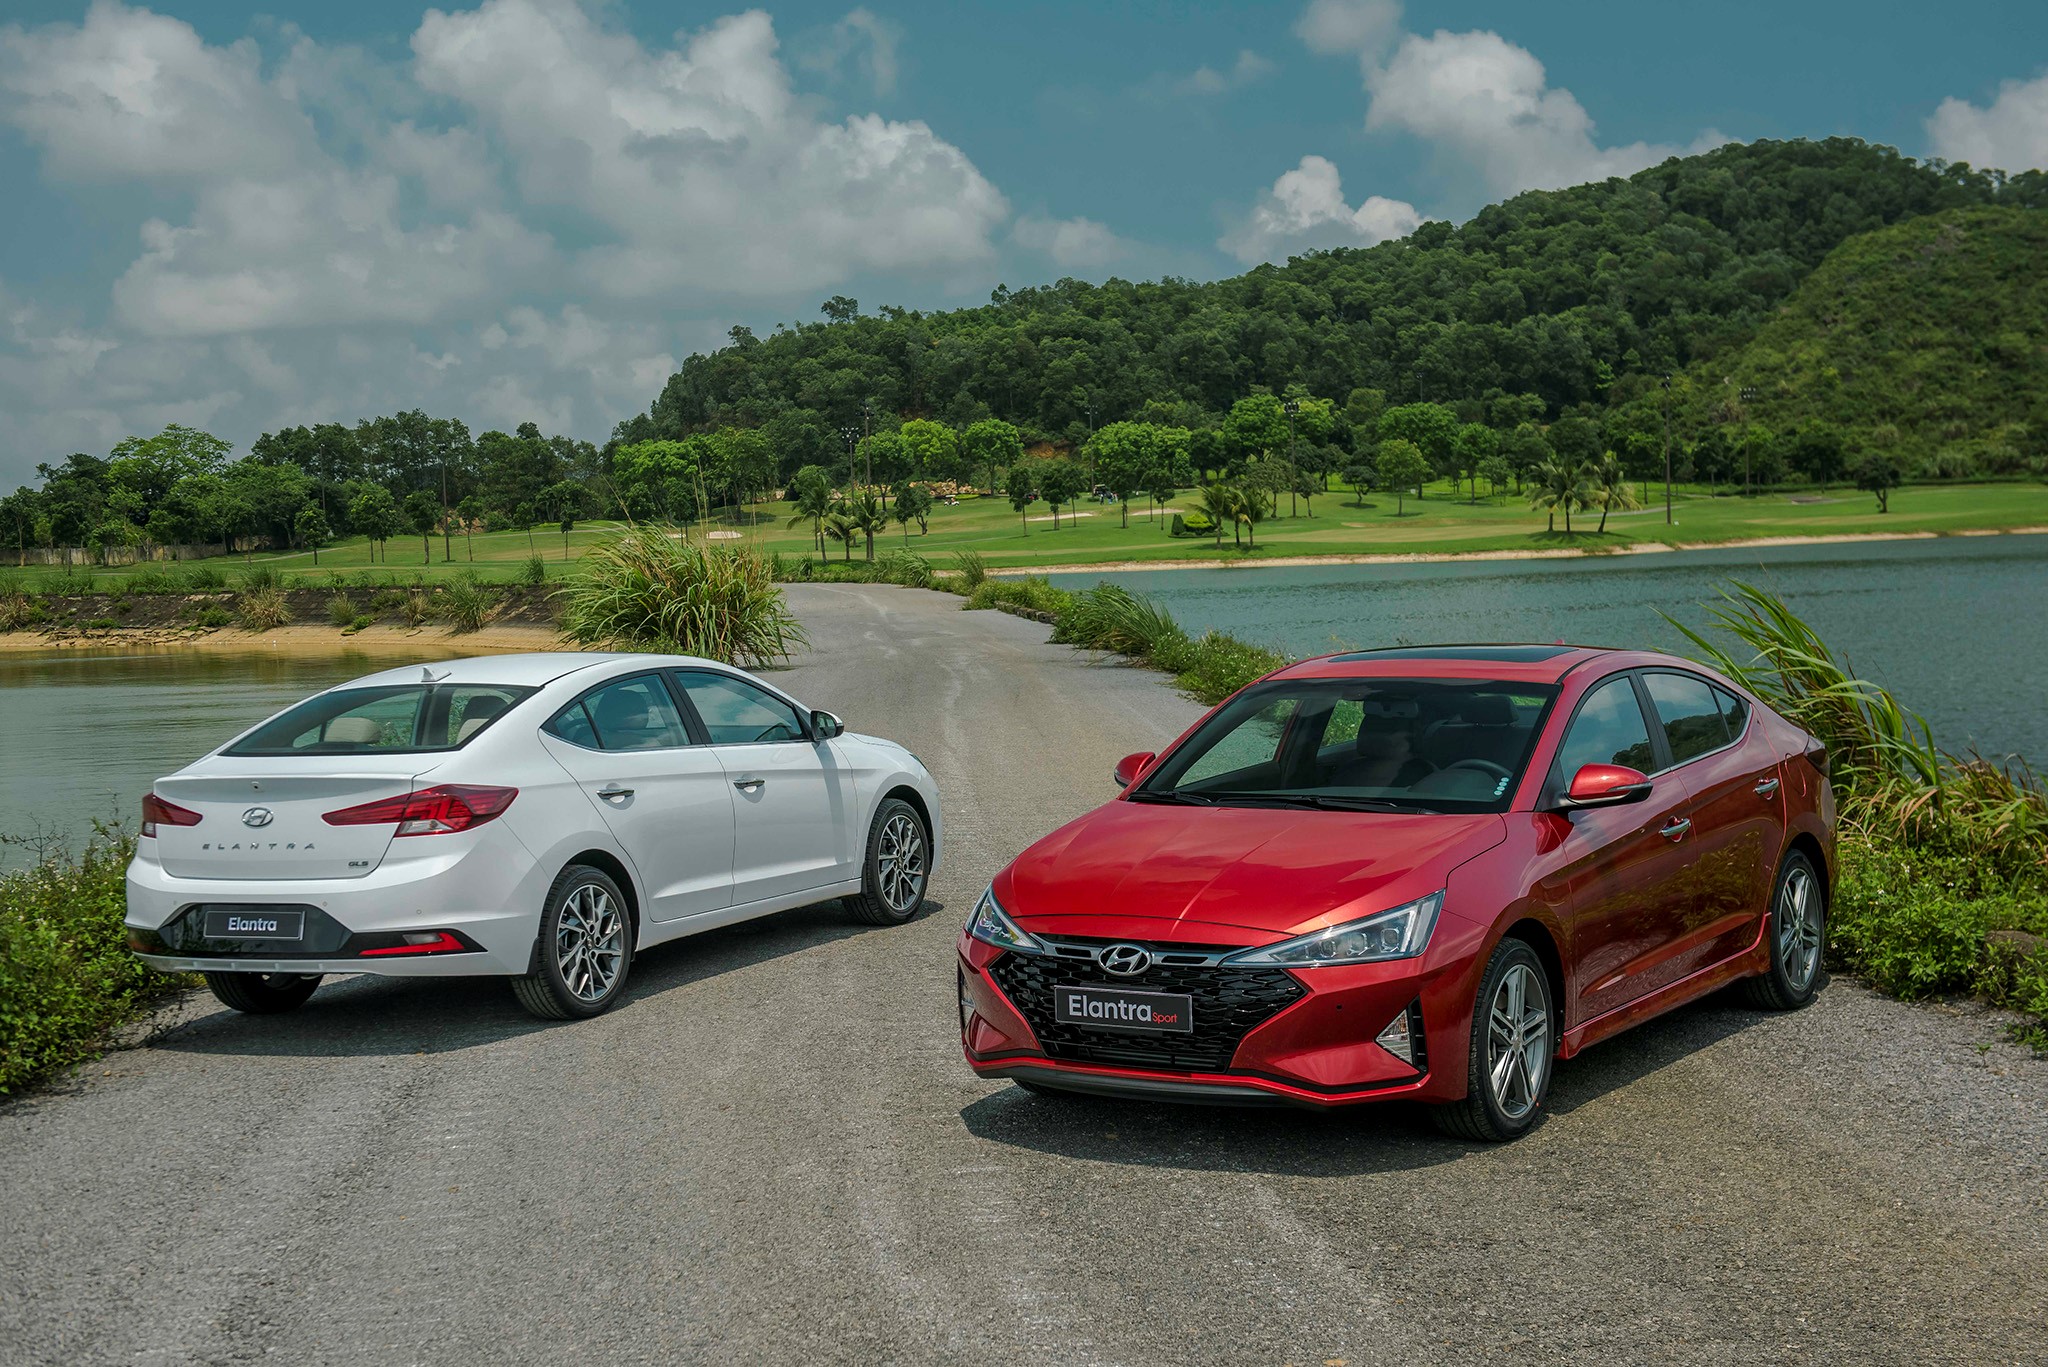 Hyundai tiếp tục dẫn đầu thị trường ô tô Việt Nam, KIA vượt luôn Toyota